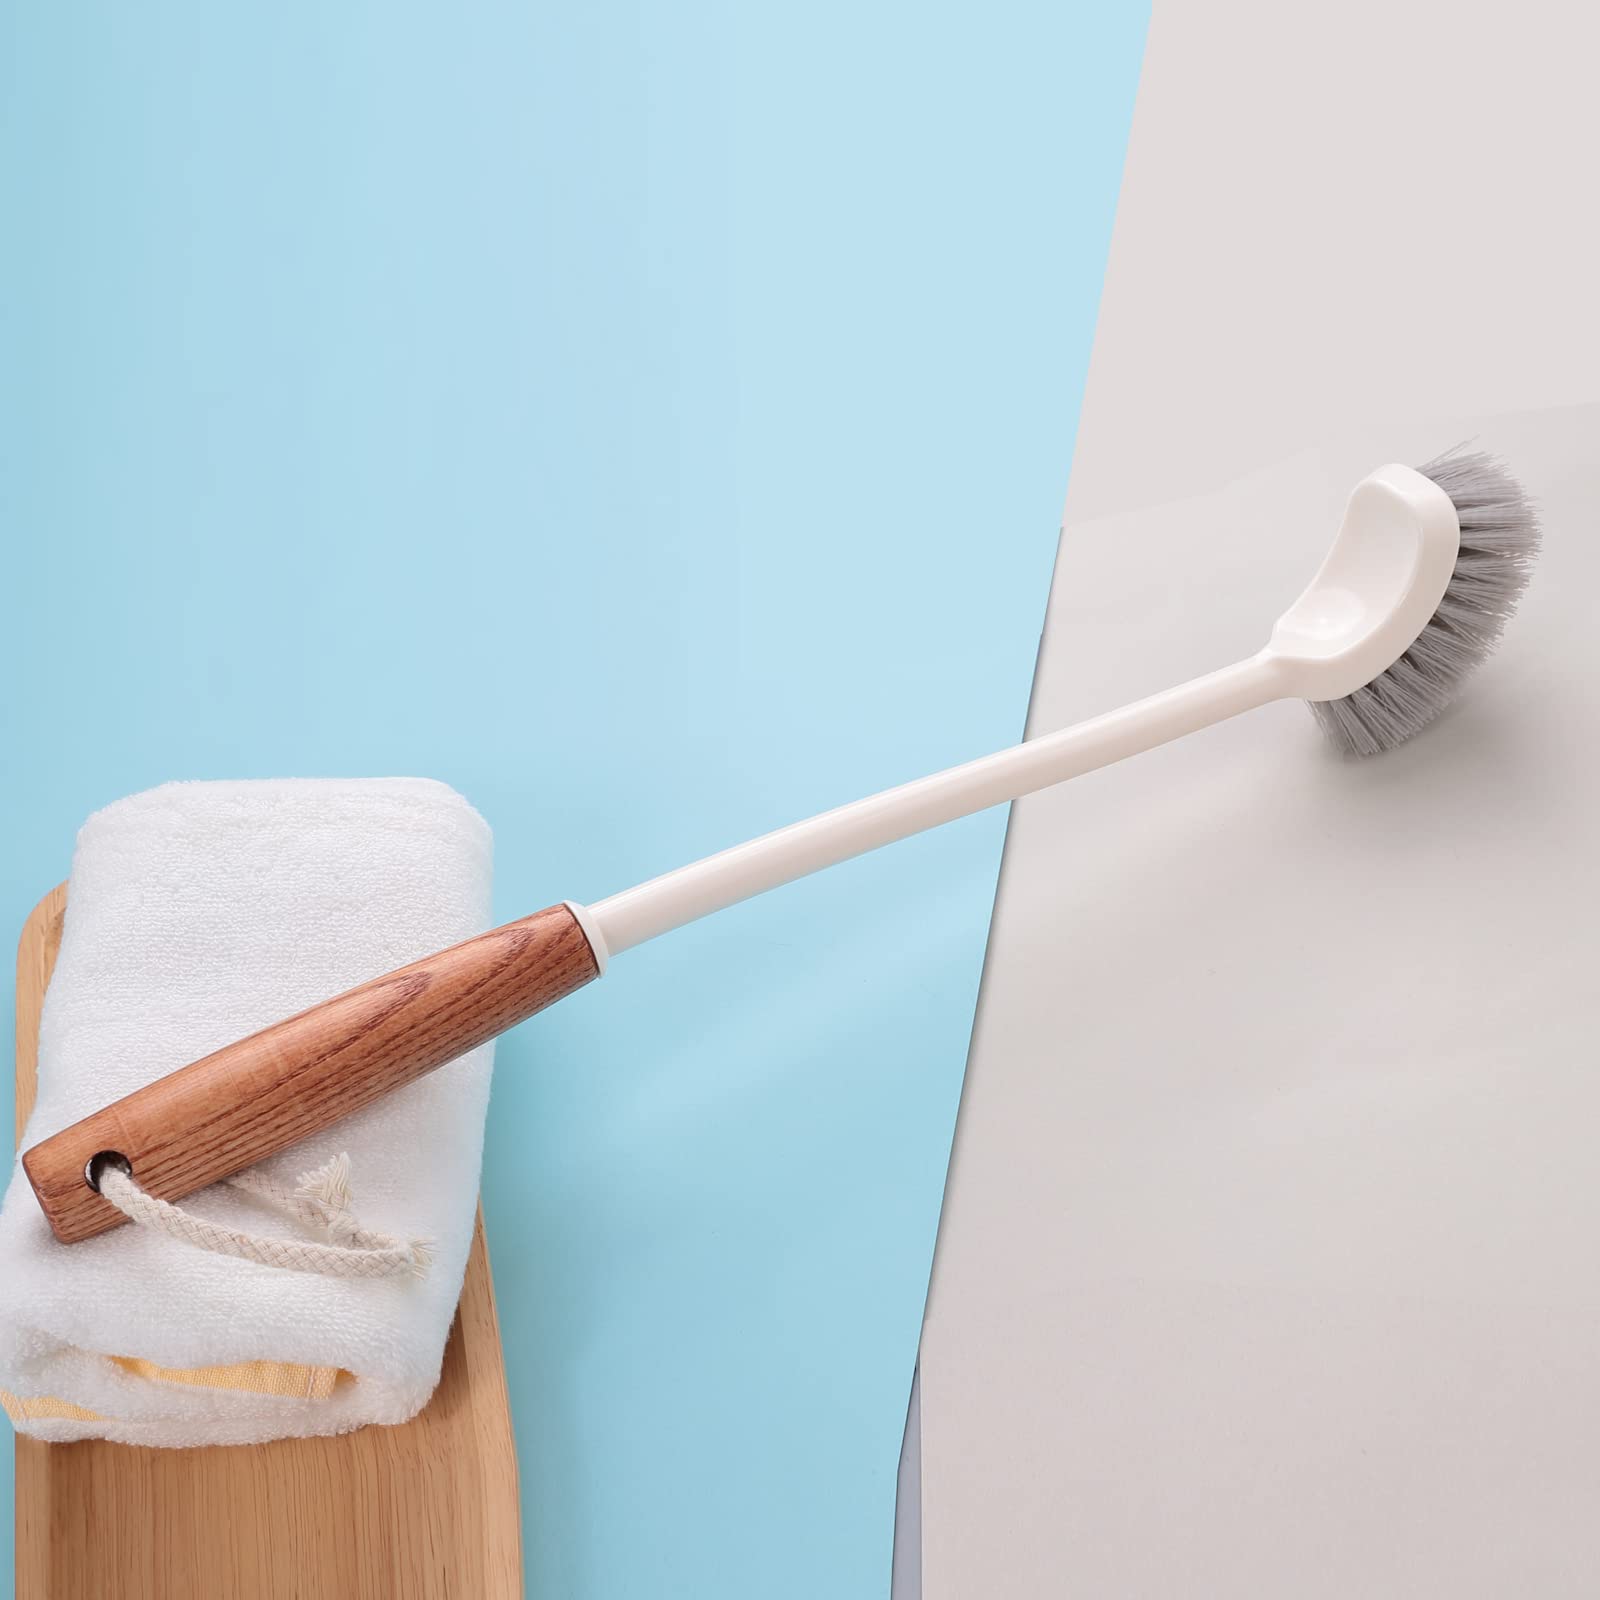 The Better Home Wooden Toilet Brush